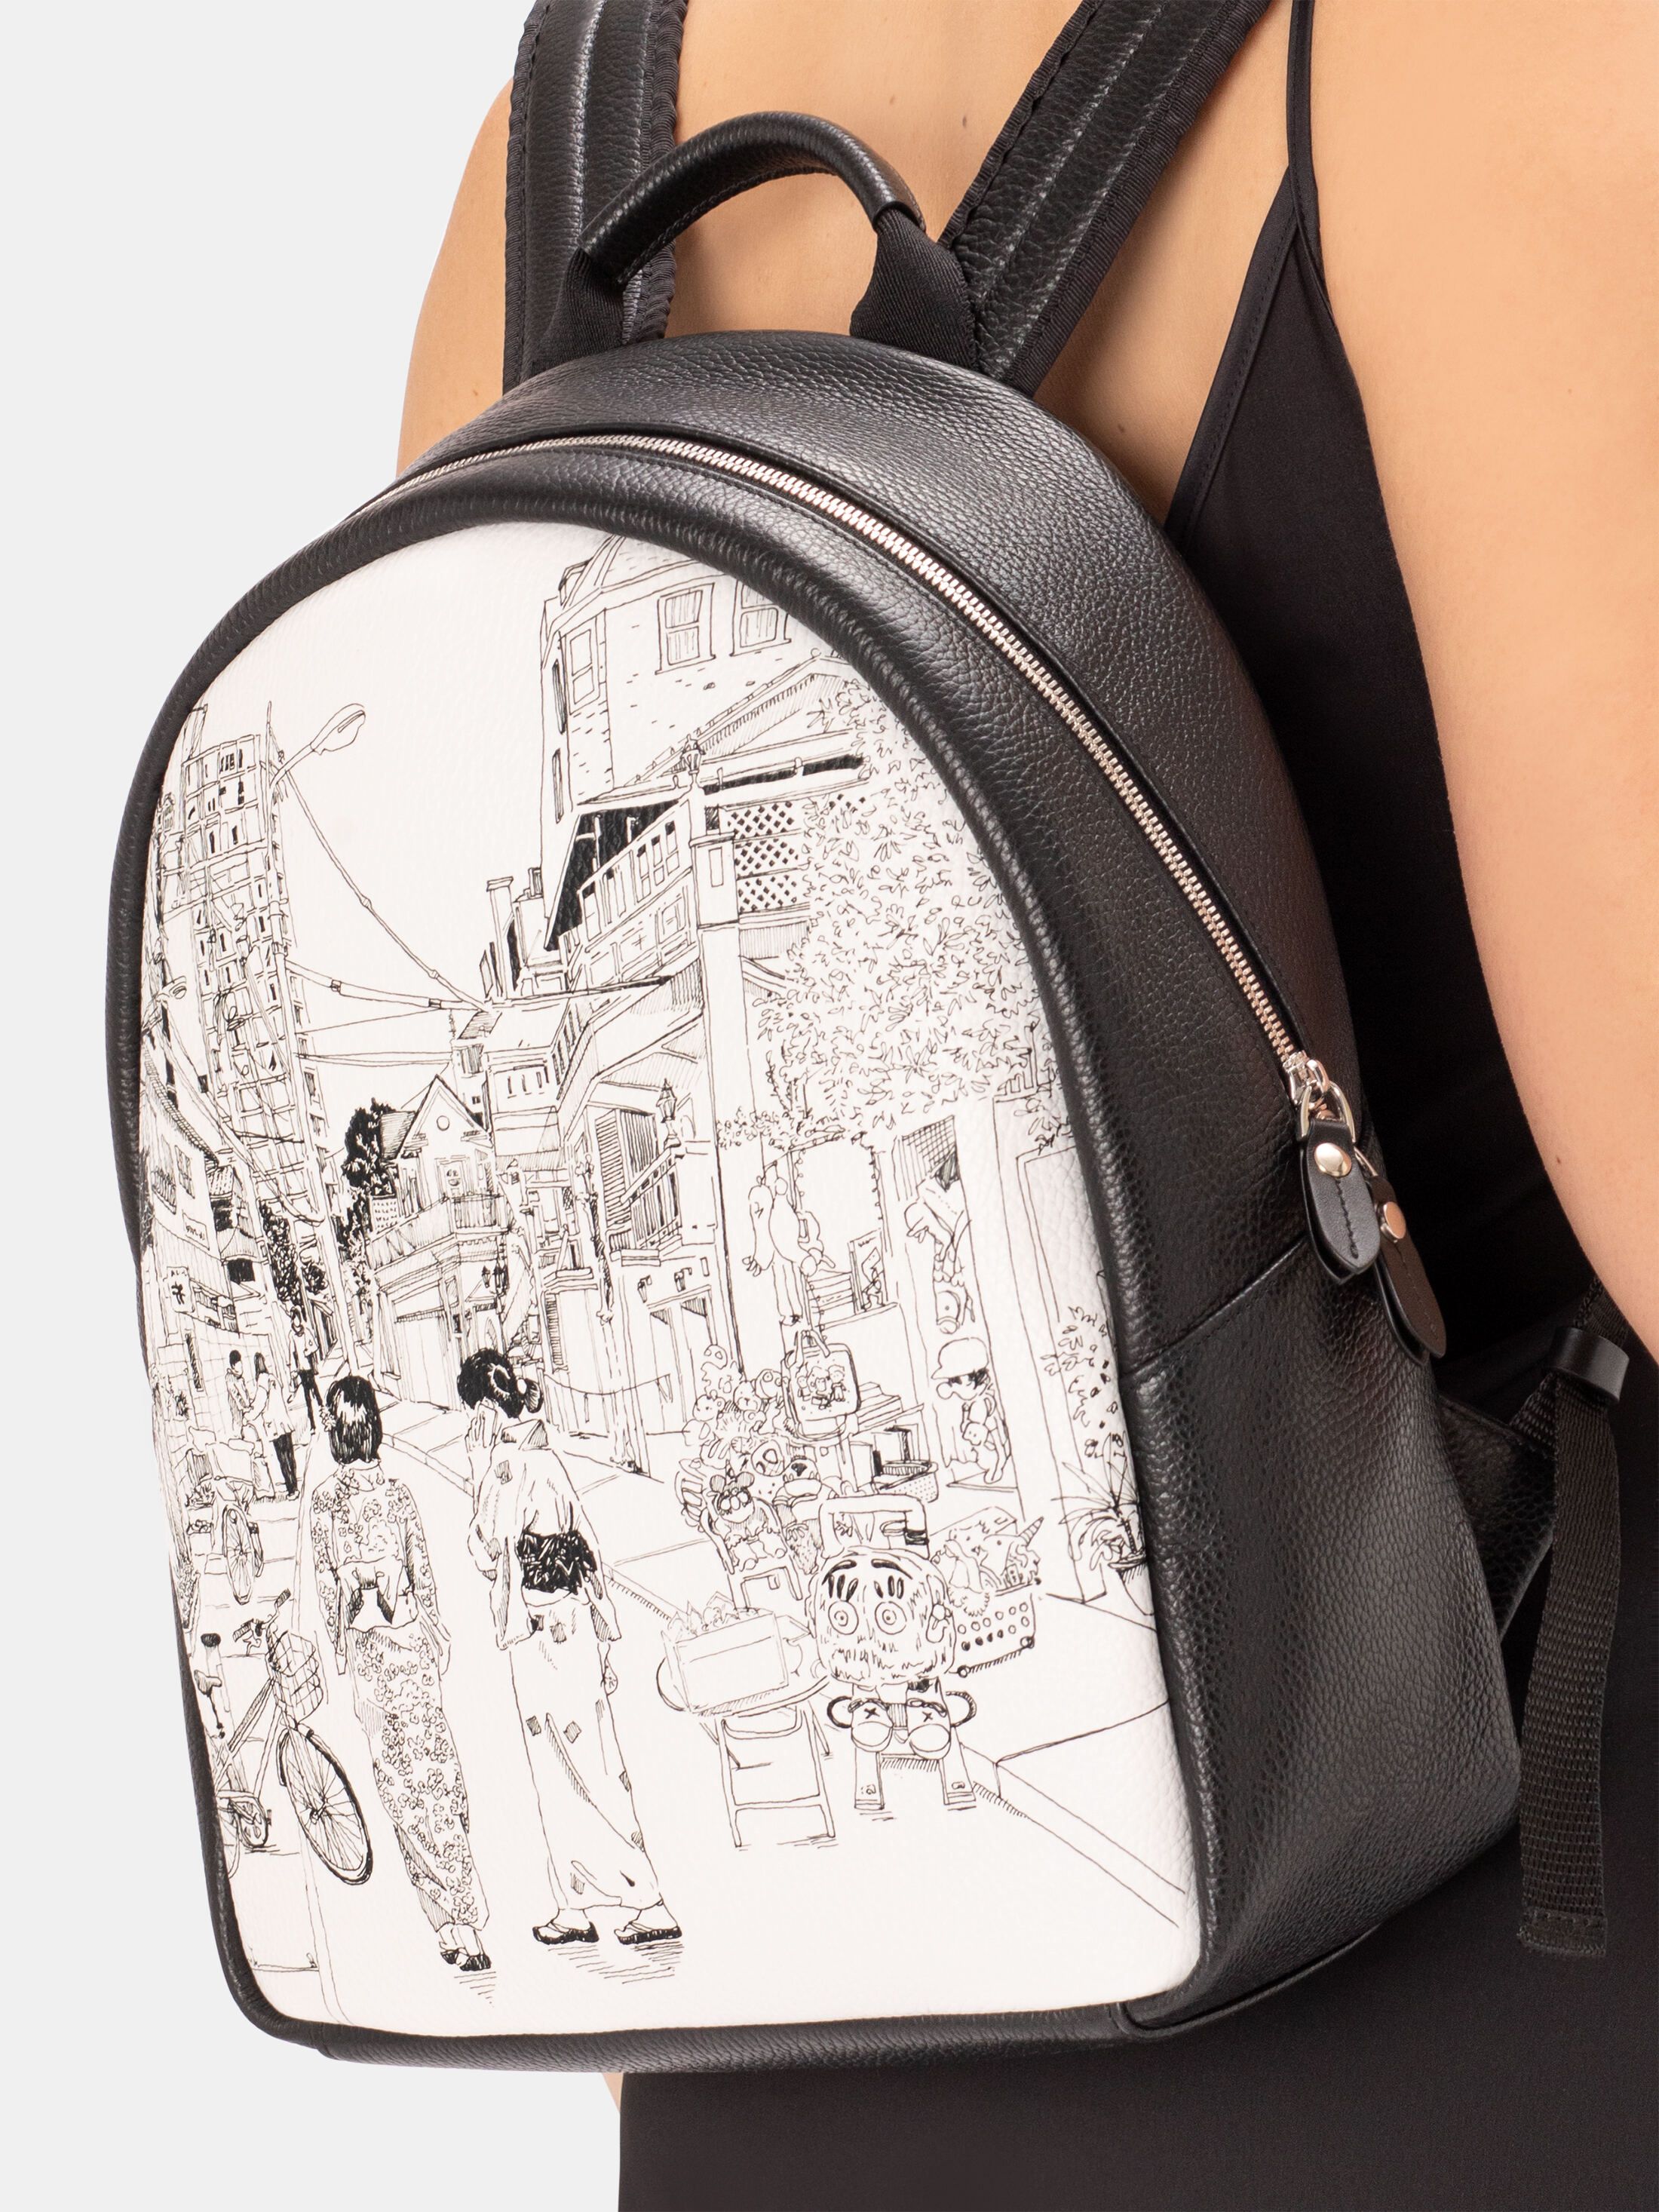 Designa din egen ryggsäck av äkta Nappaläder